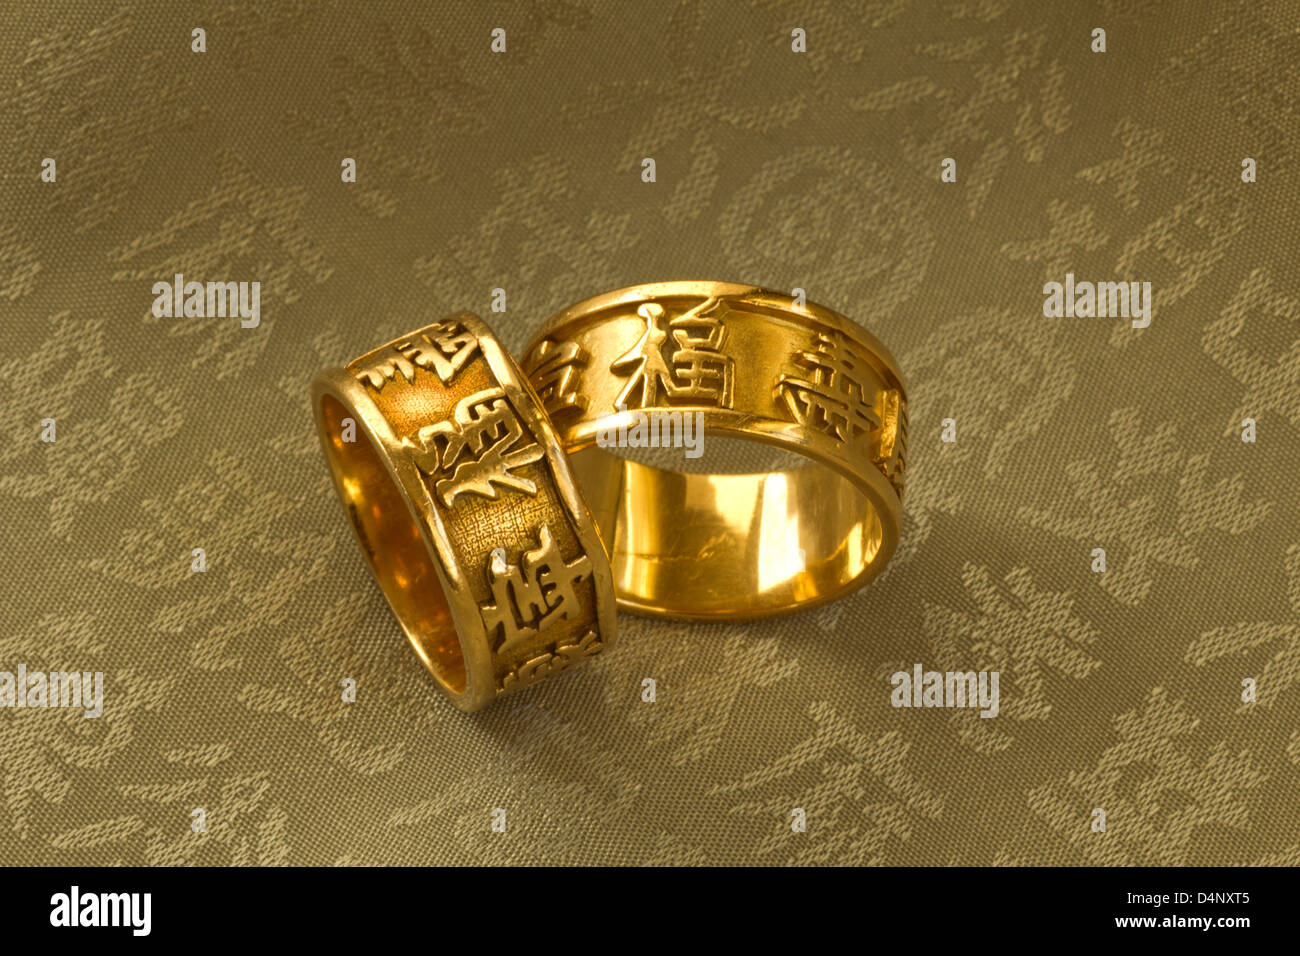 Bagues en or avec les caractères chinois signifiant longue vie, bonne chance Banque D'Images